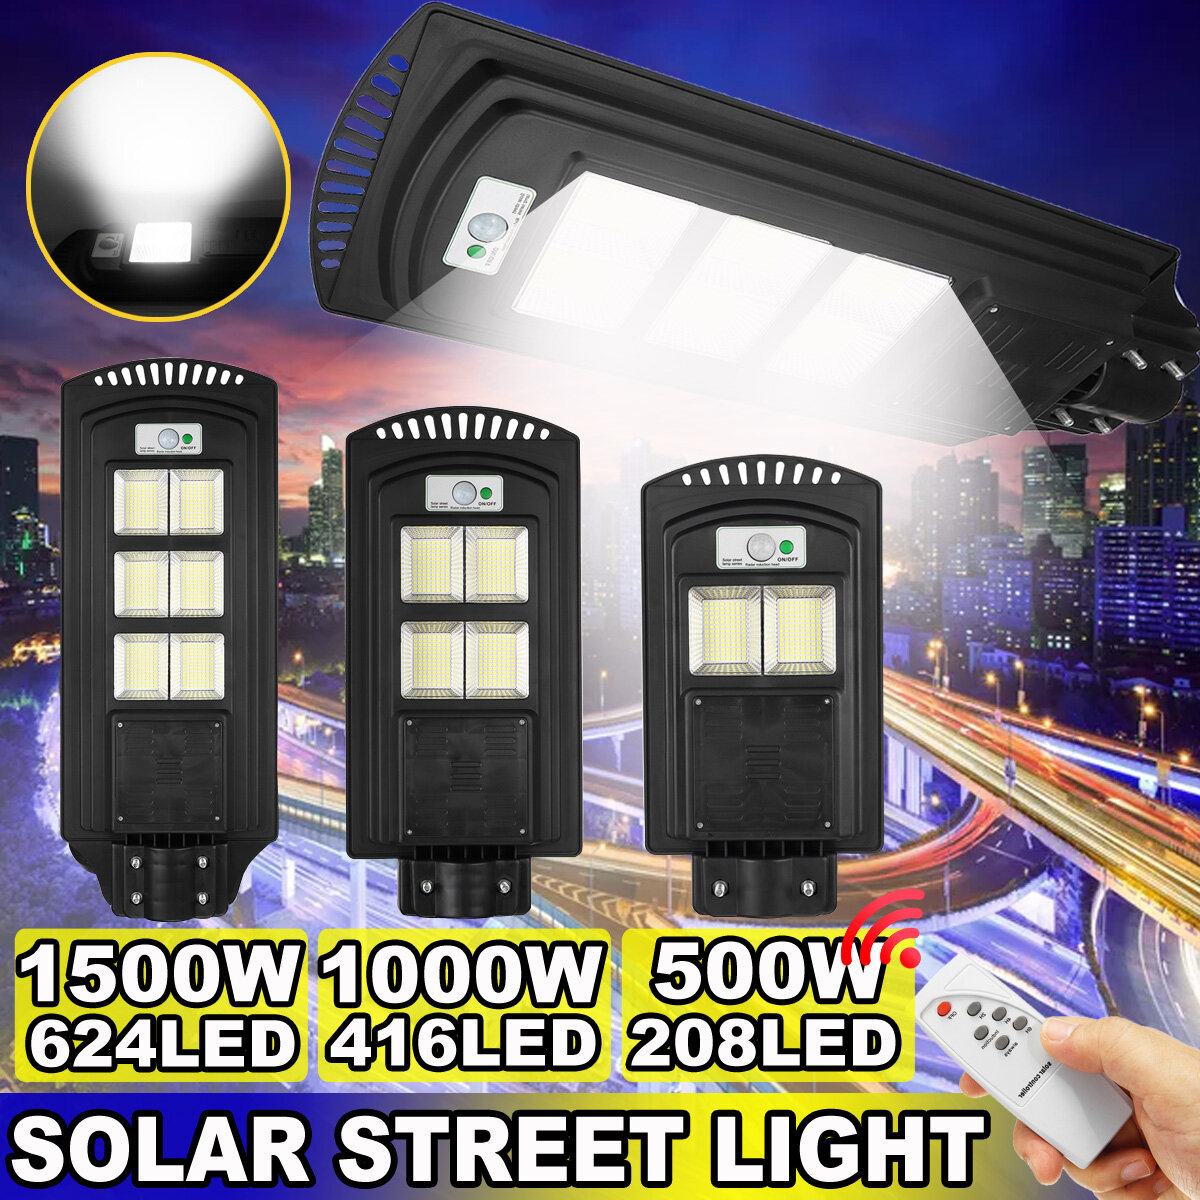 500-2500W 208-624 LED-straatlantaarn op zonne-energie PIR Wandlamp met bewegingssensor met afstandsb